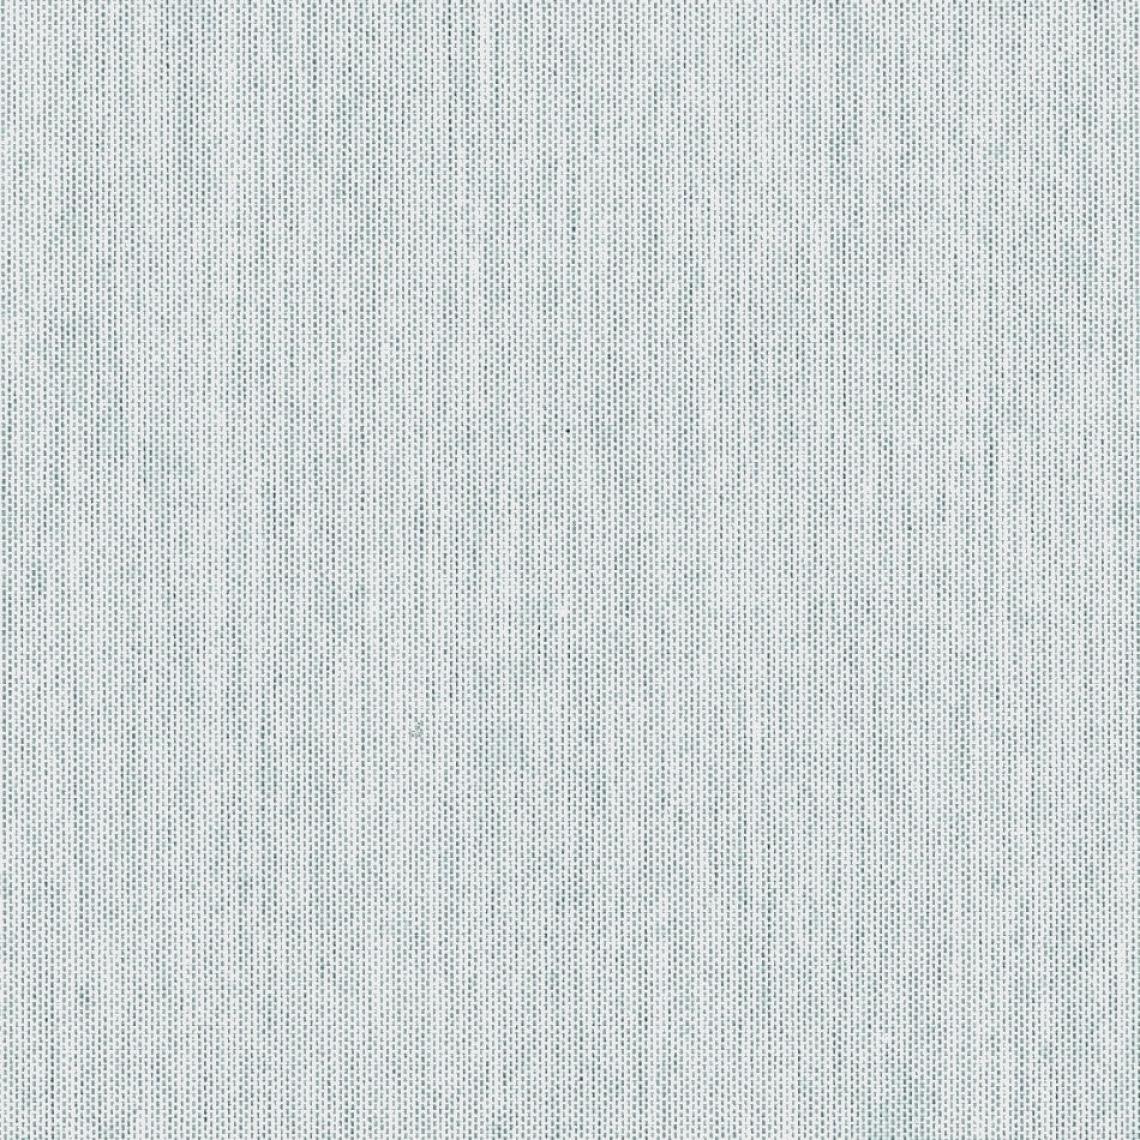 Conmoto - Oreiller carrée MIAMI - gris clair - Coussins, galettes de jardin